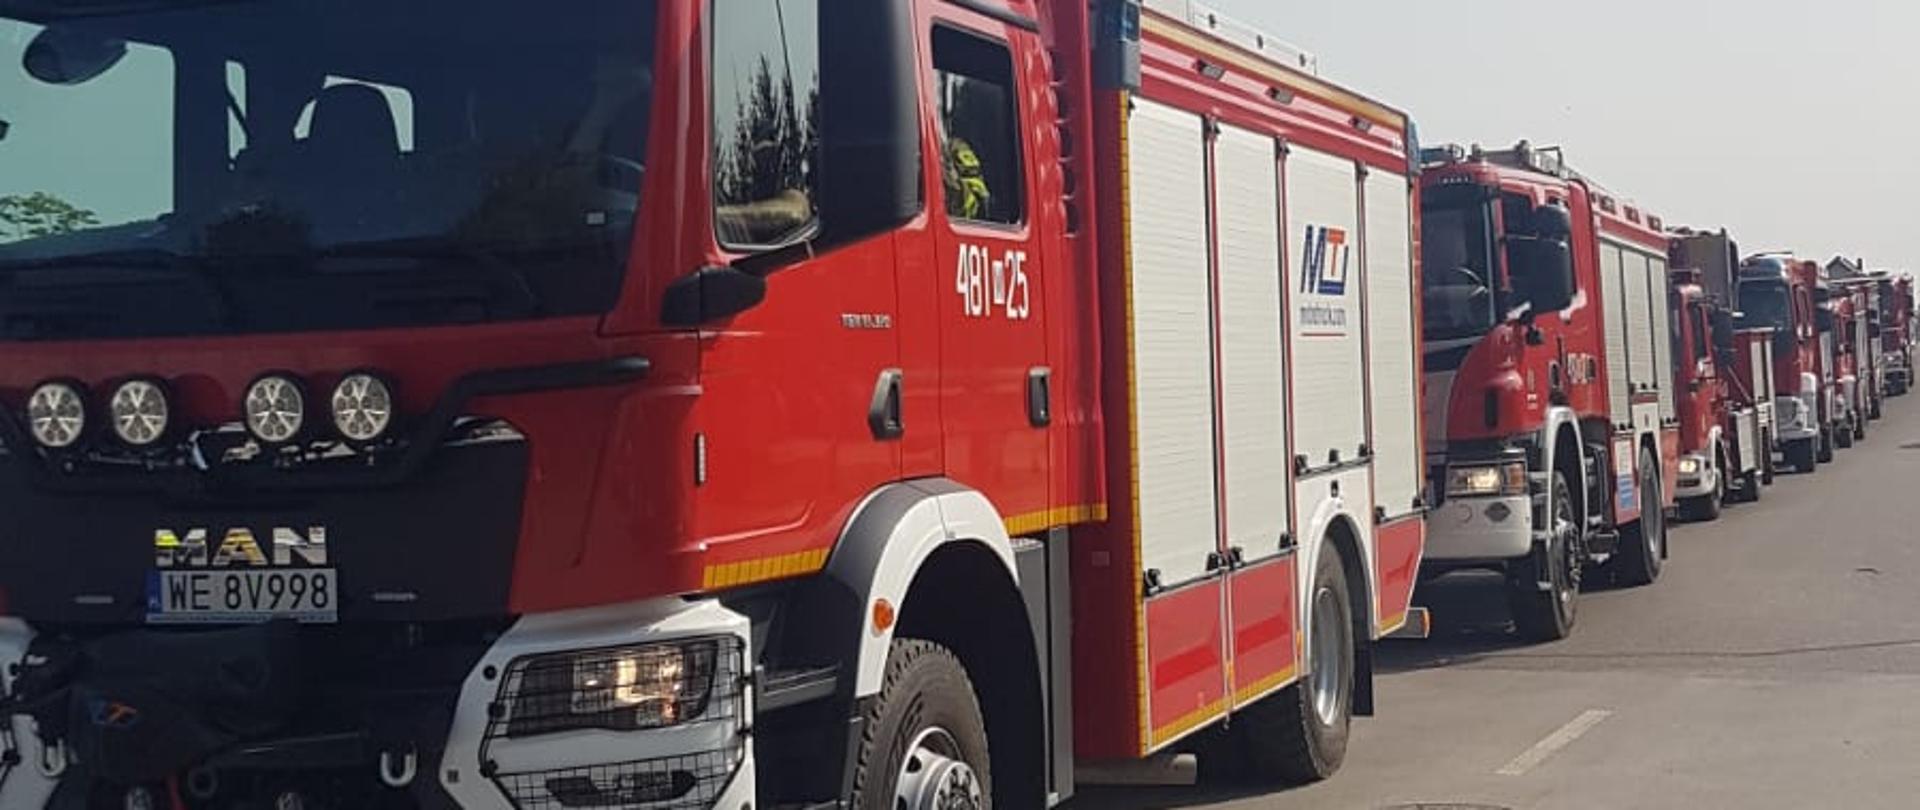 Ćwiczenia na obiekcie Szpitala - pojazdy pożarnicze biorące udział w ćwiczeniach